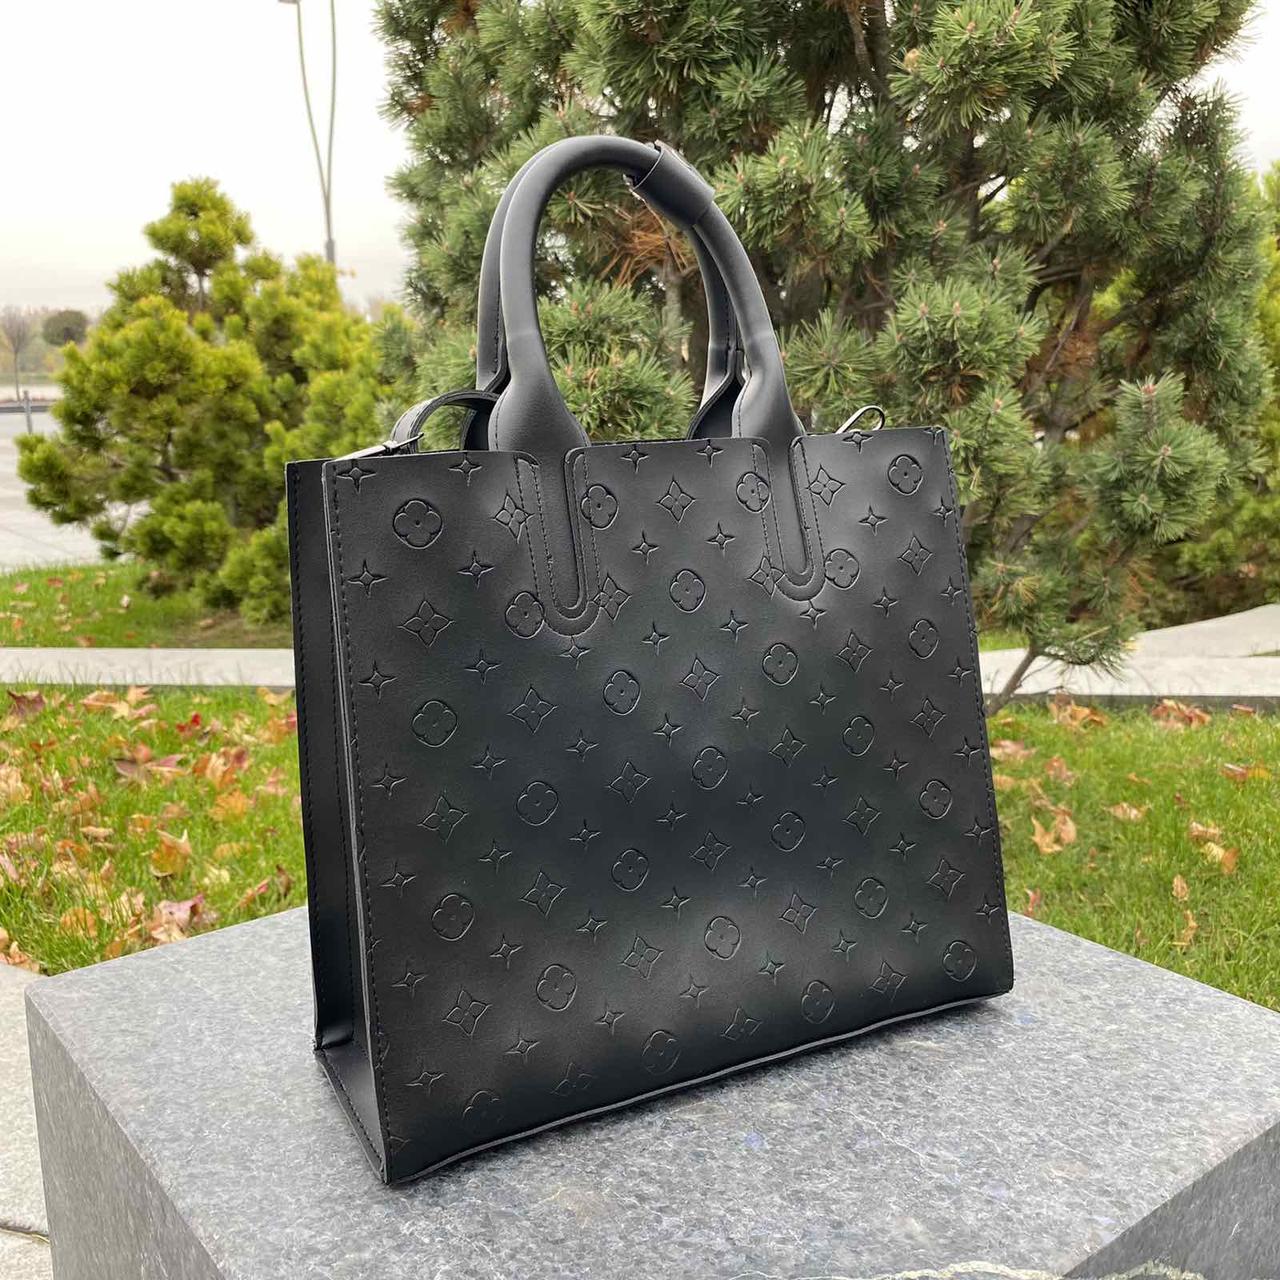 Велика чорна сумка стиль Луї Вітон люкс, велика міська сумка для жінок на плече